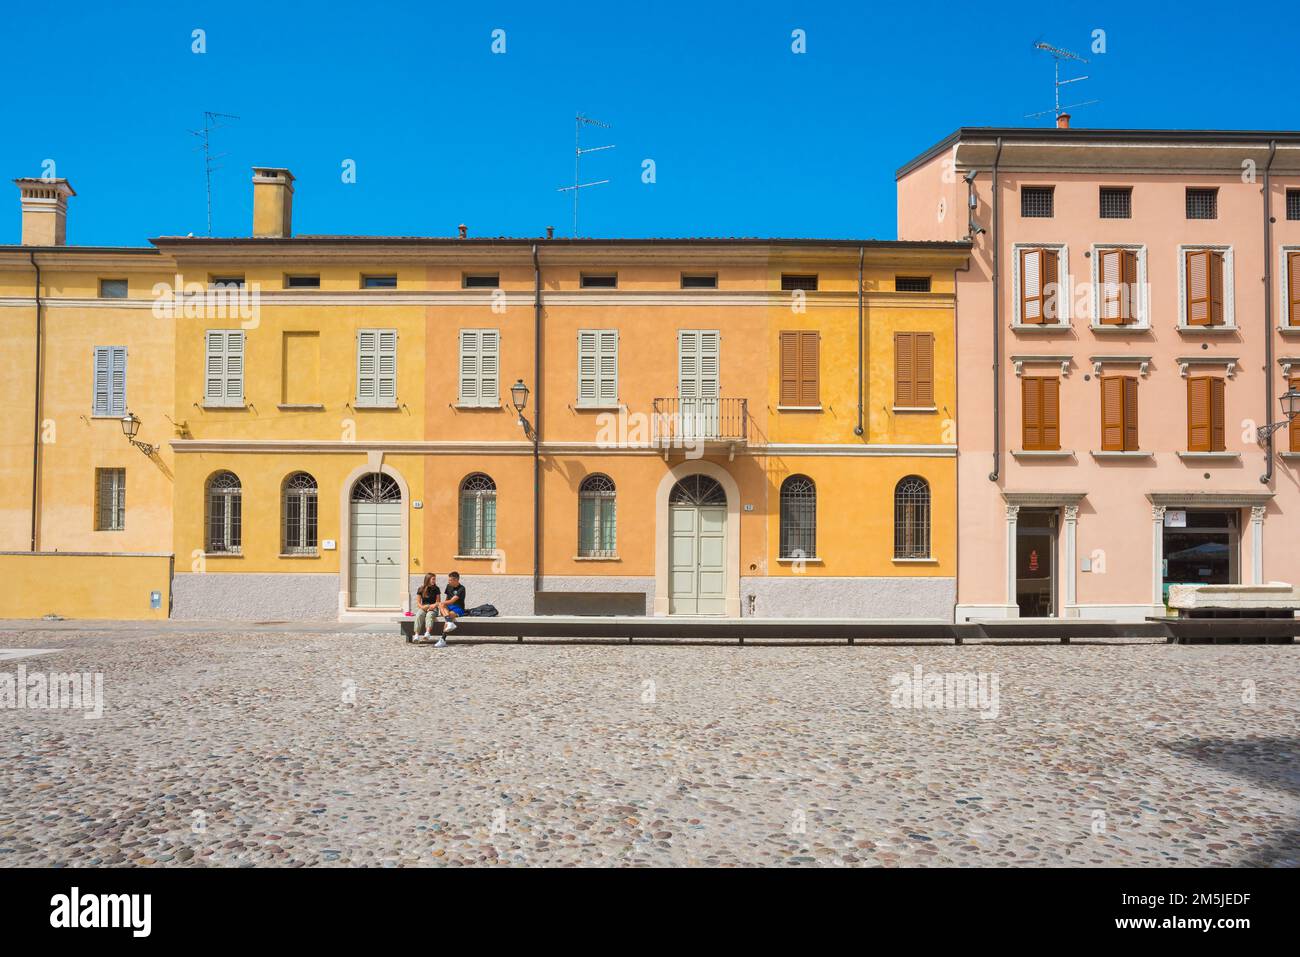 Junge Menschen lieben das Europa des Sommers, wenn sie allein auf einem farbenfrohen Platz in Mantua, Lombardei, Italien sitzen und sich unterhalten Stockfoto